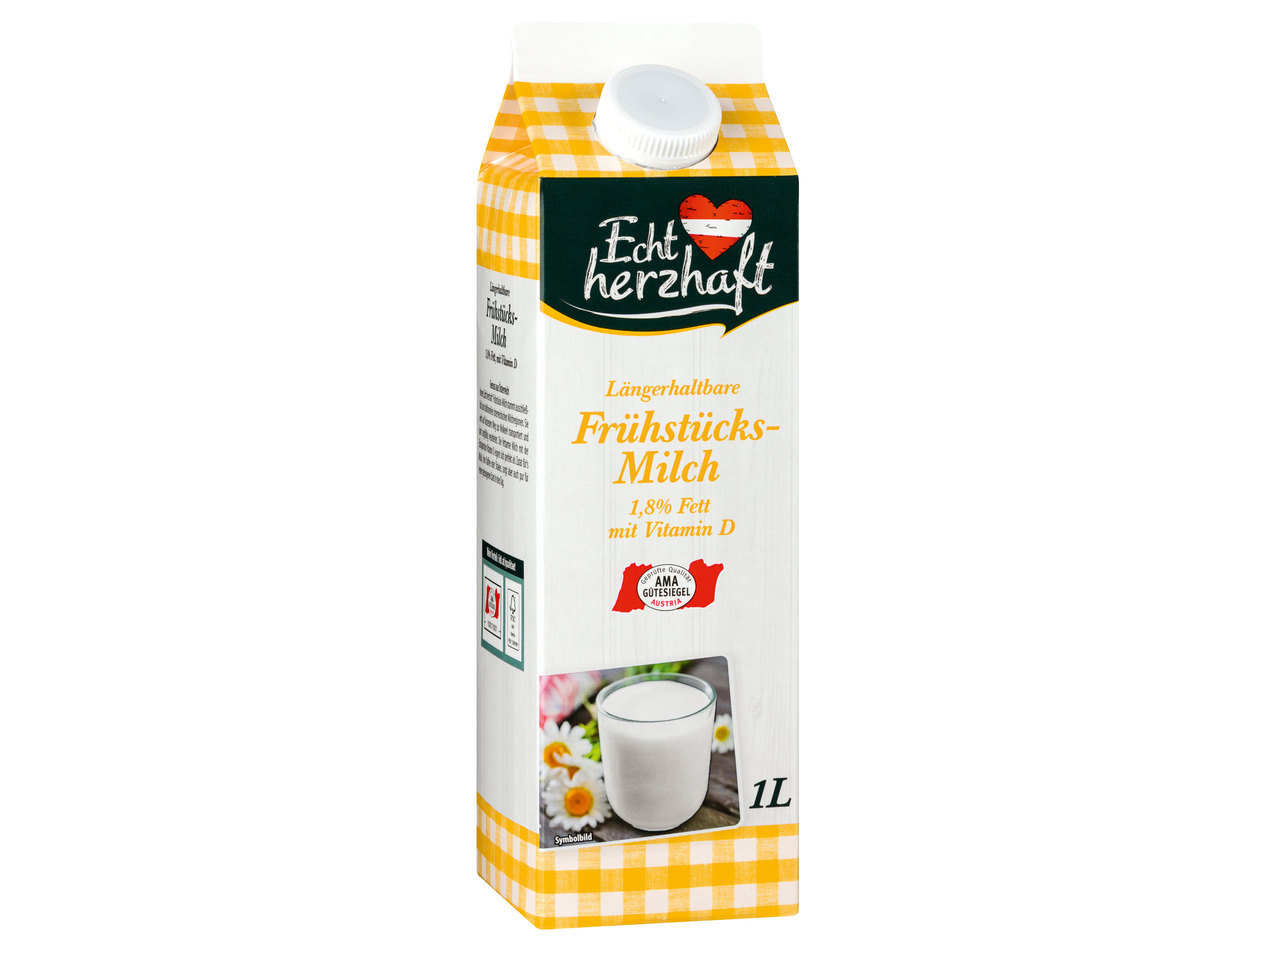 ECHT HERZHAFT Frühstücksmilch 1,8%